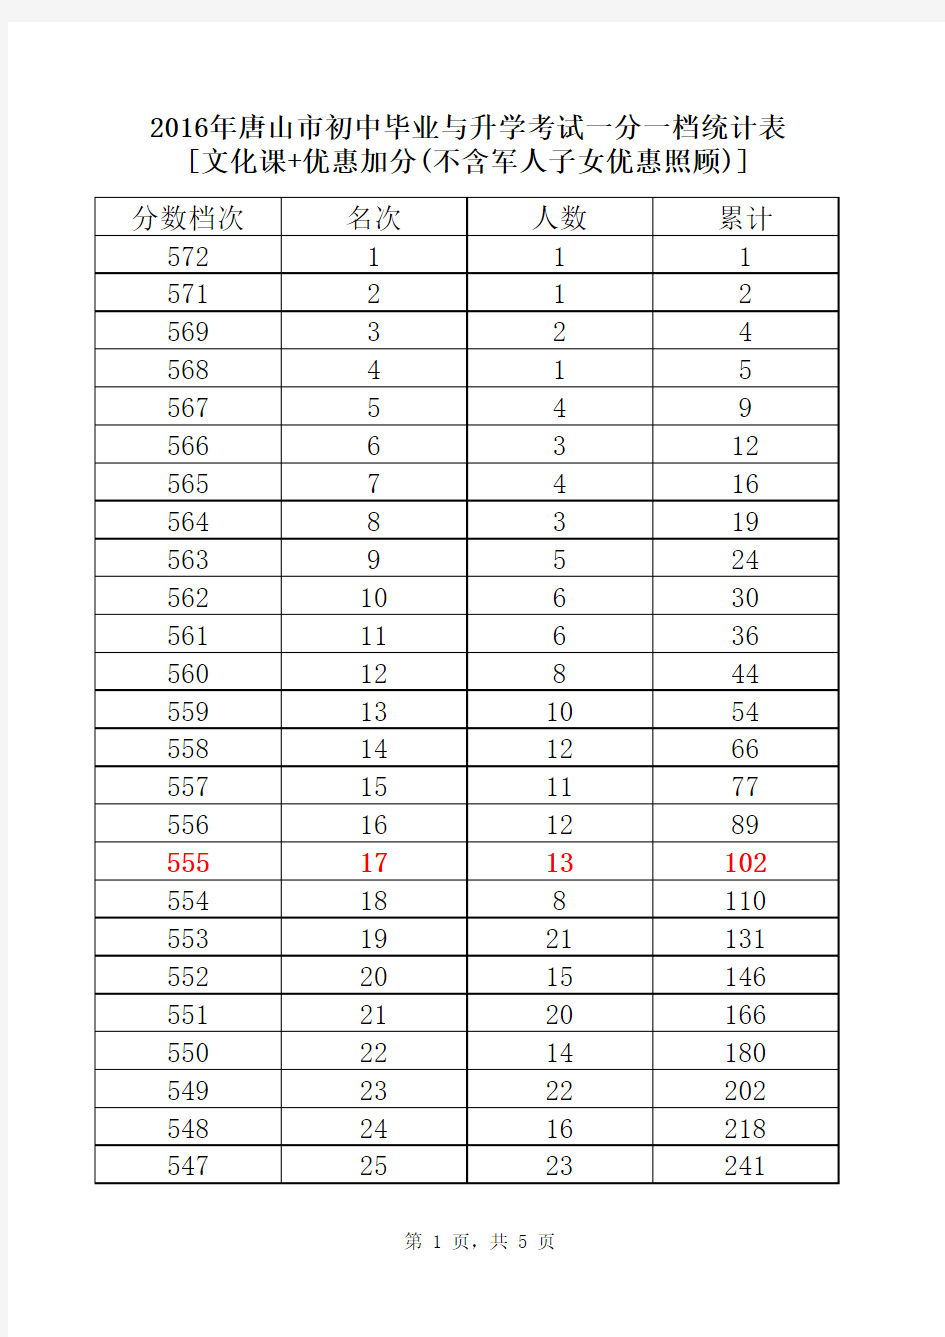 2016年唐山中考市区一分一档统计表